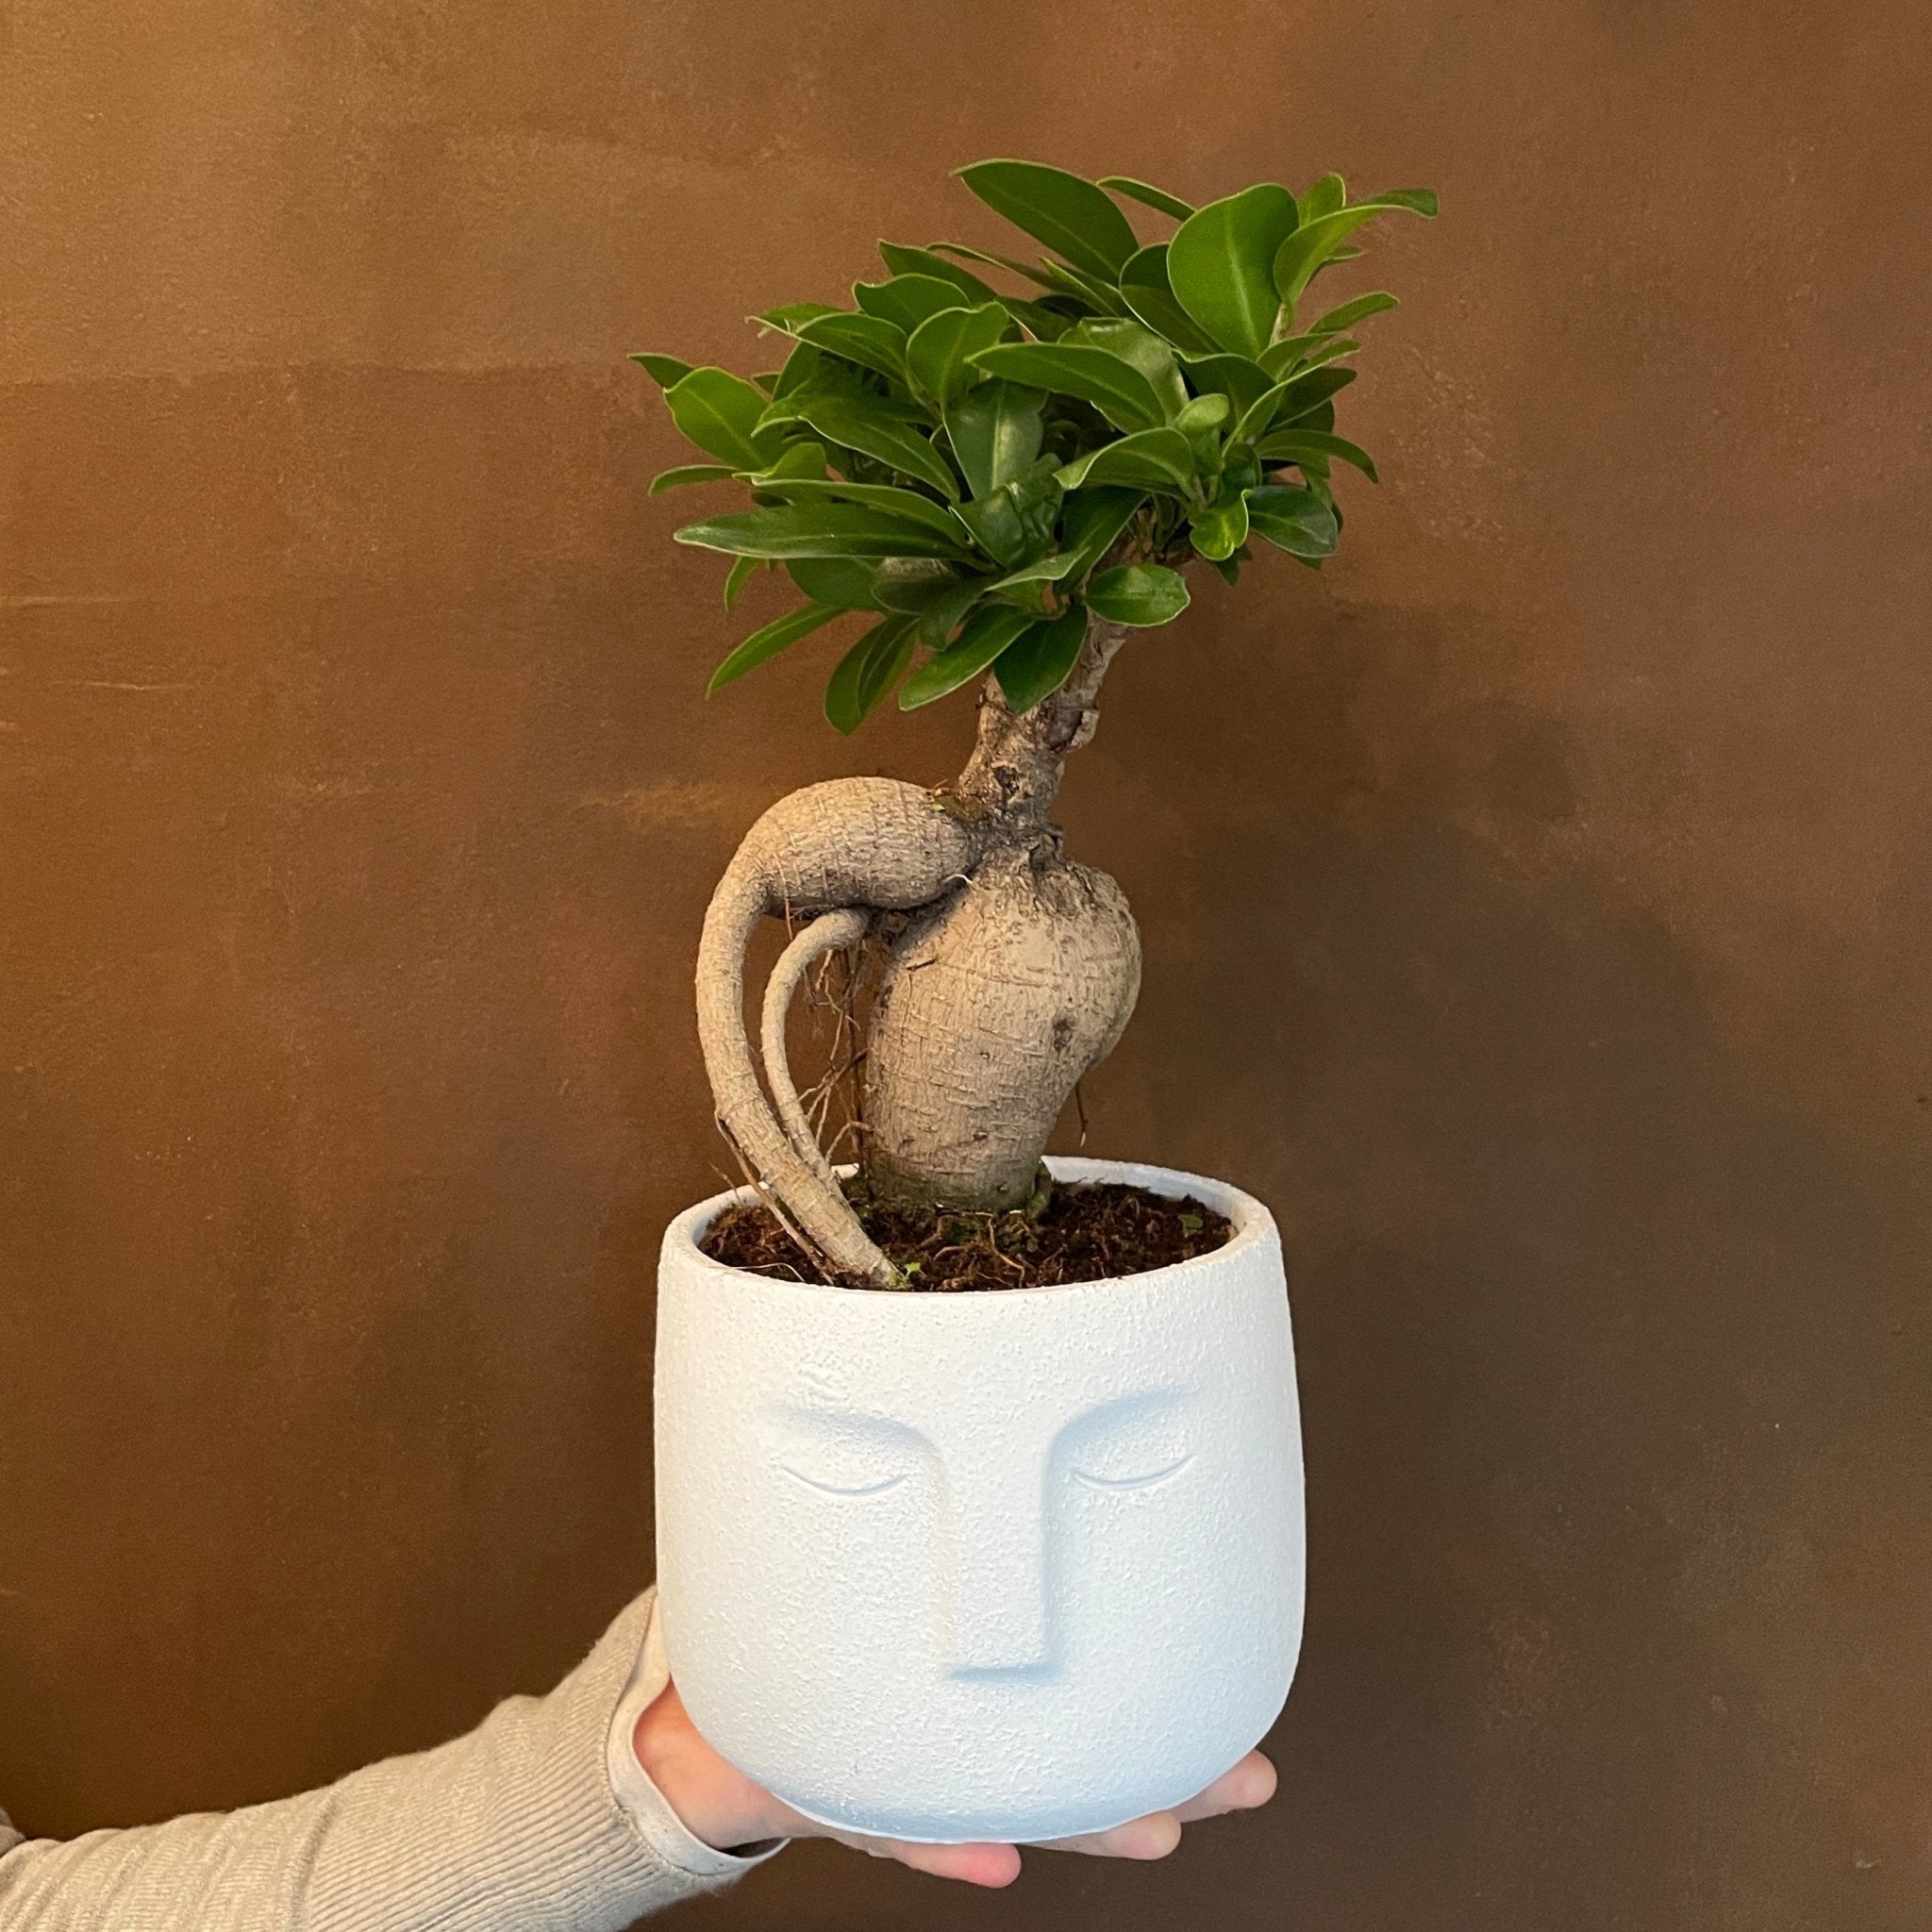 Ficus microcarpa ‘Ginseng’ with Zen pot - grow urban. UK